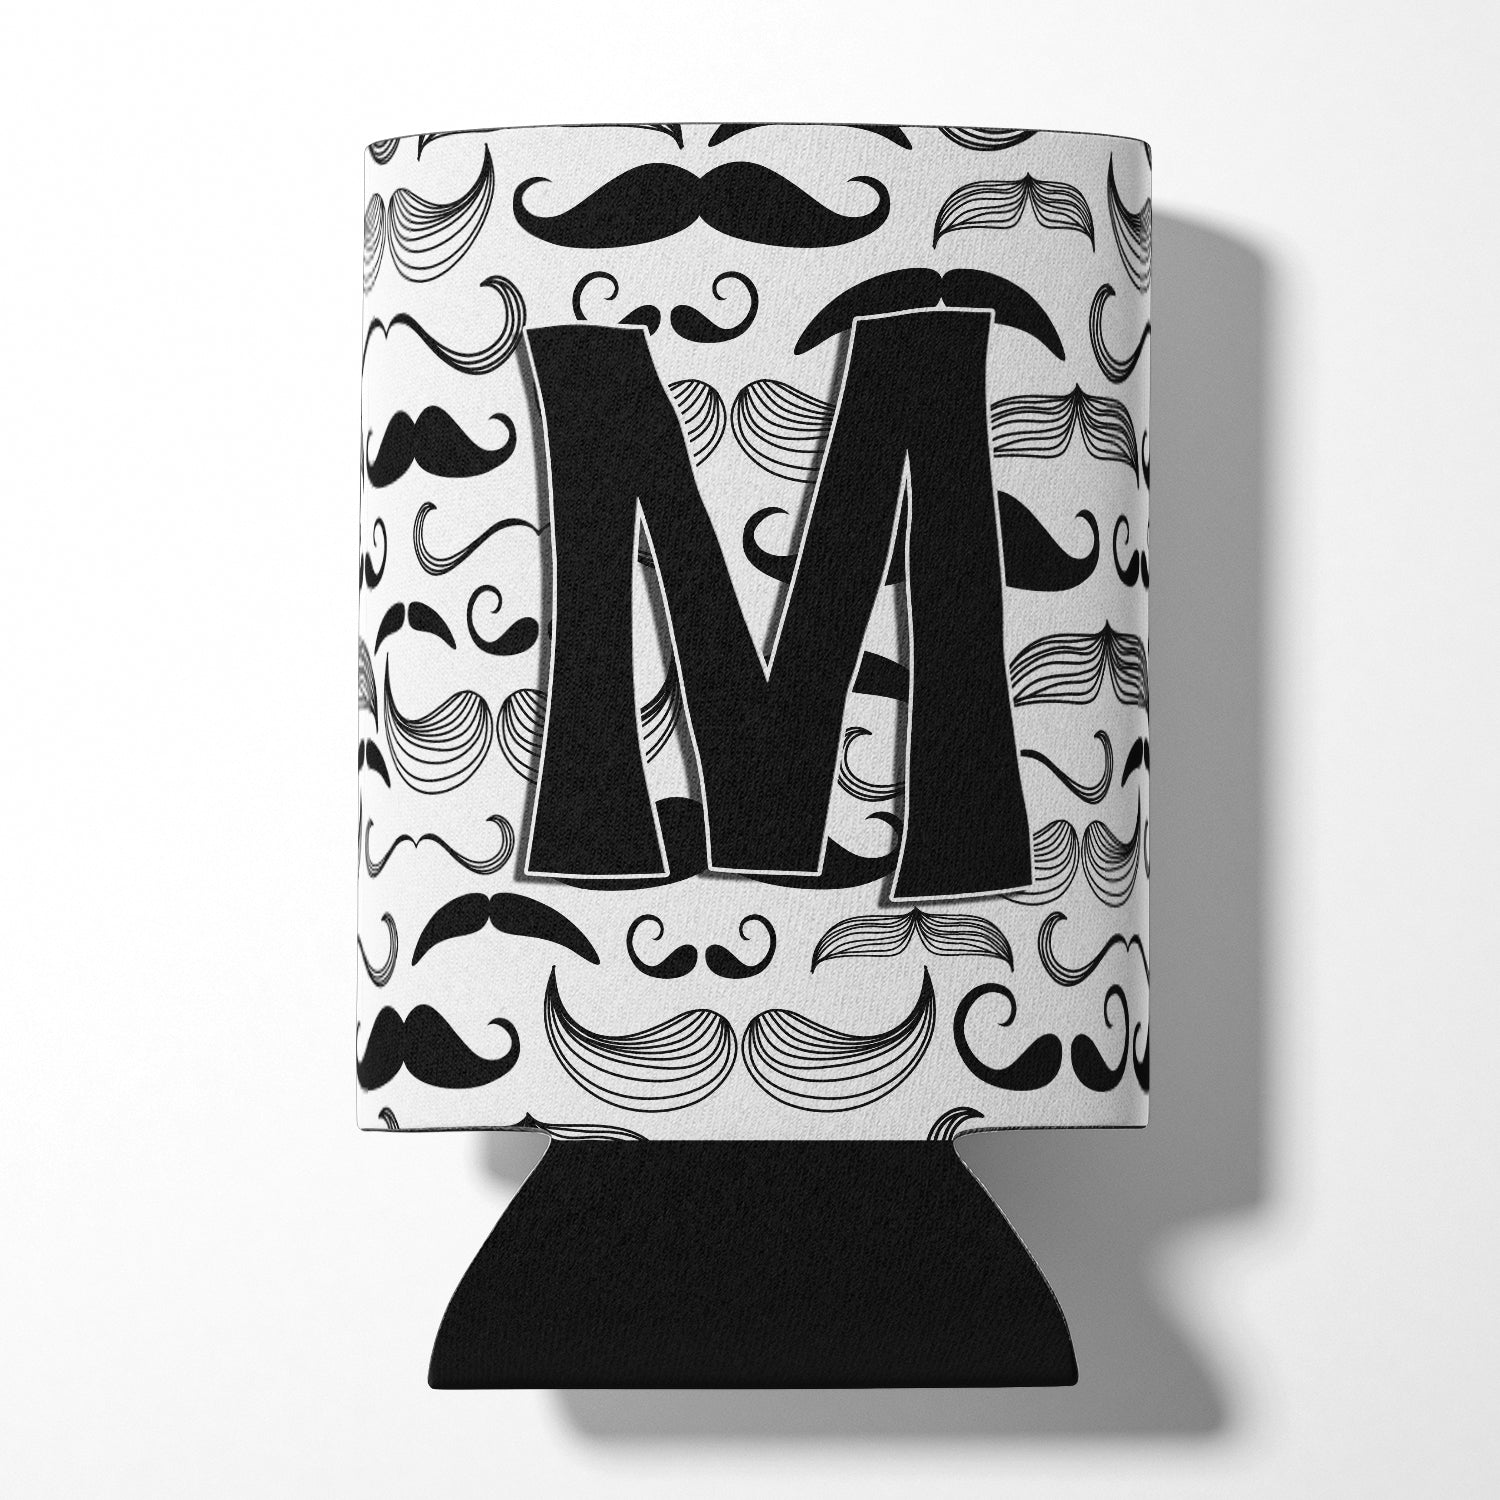 Lettre M Moustache Initiale Can ou Bottle Hugger CJ2009-MCC